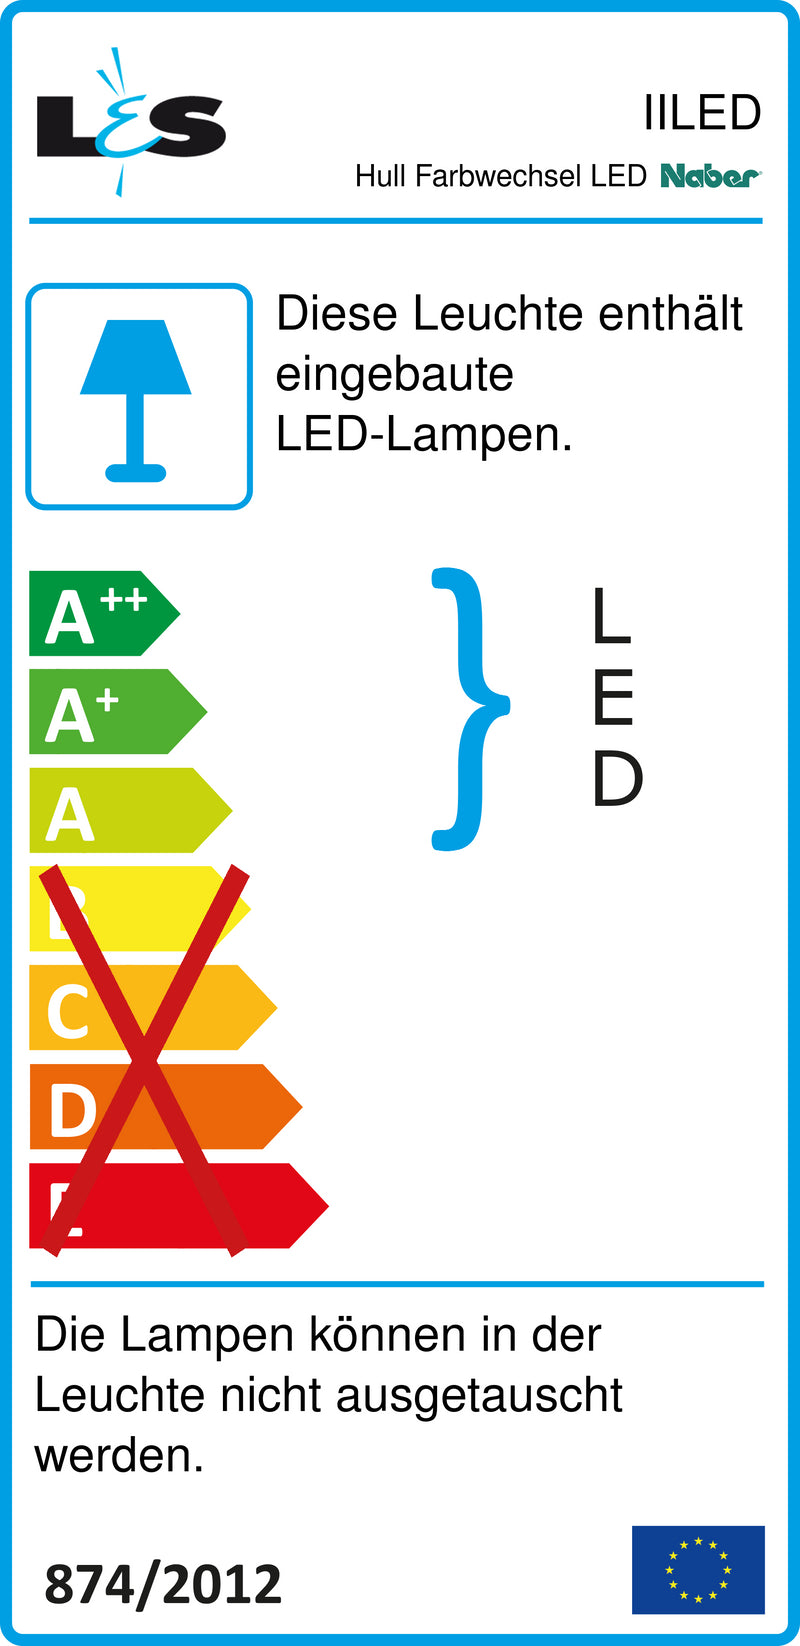 E-Label zu Zeichnung zu Hull Farbwechsel LED als Variante Set-5, edelstahlfarbig von Naber GmbH in der Kategorie Lichttechnik in Österreich auf conceptshop.at